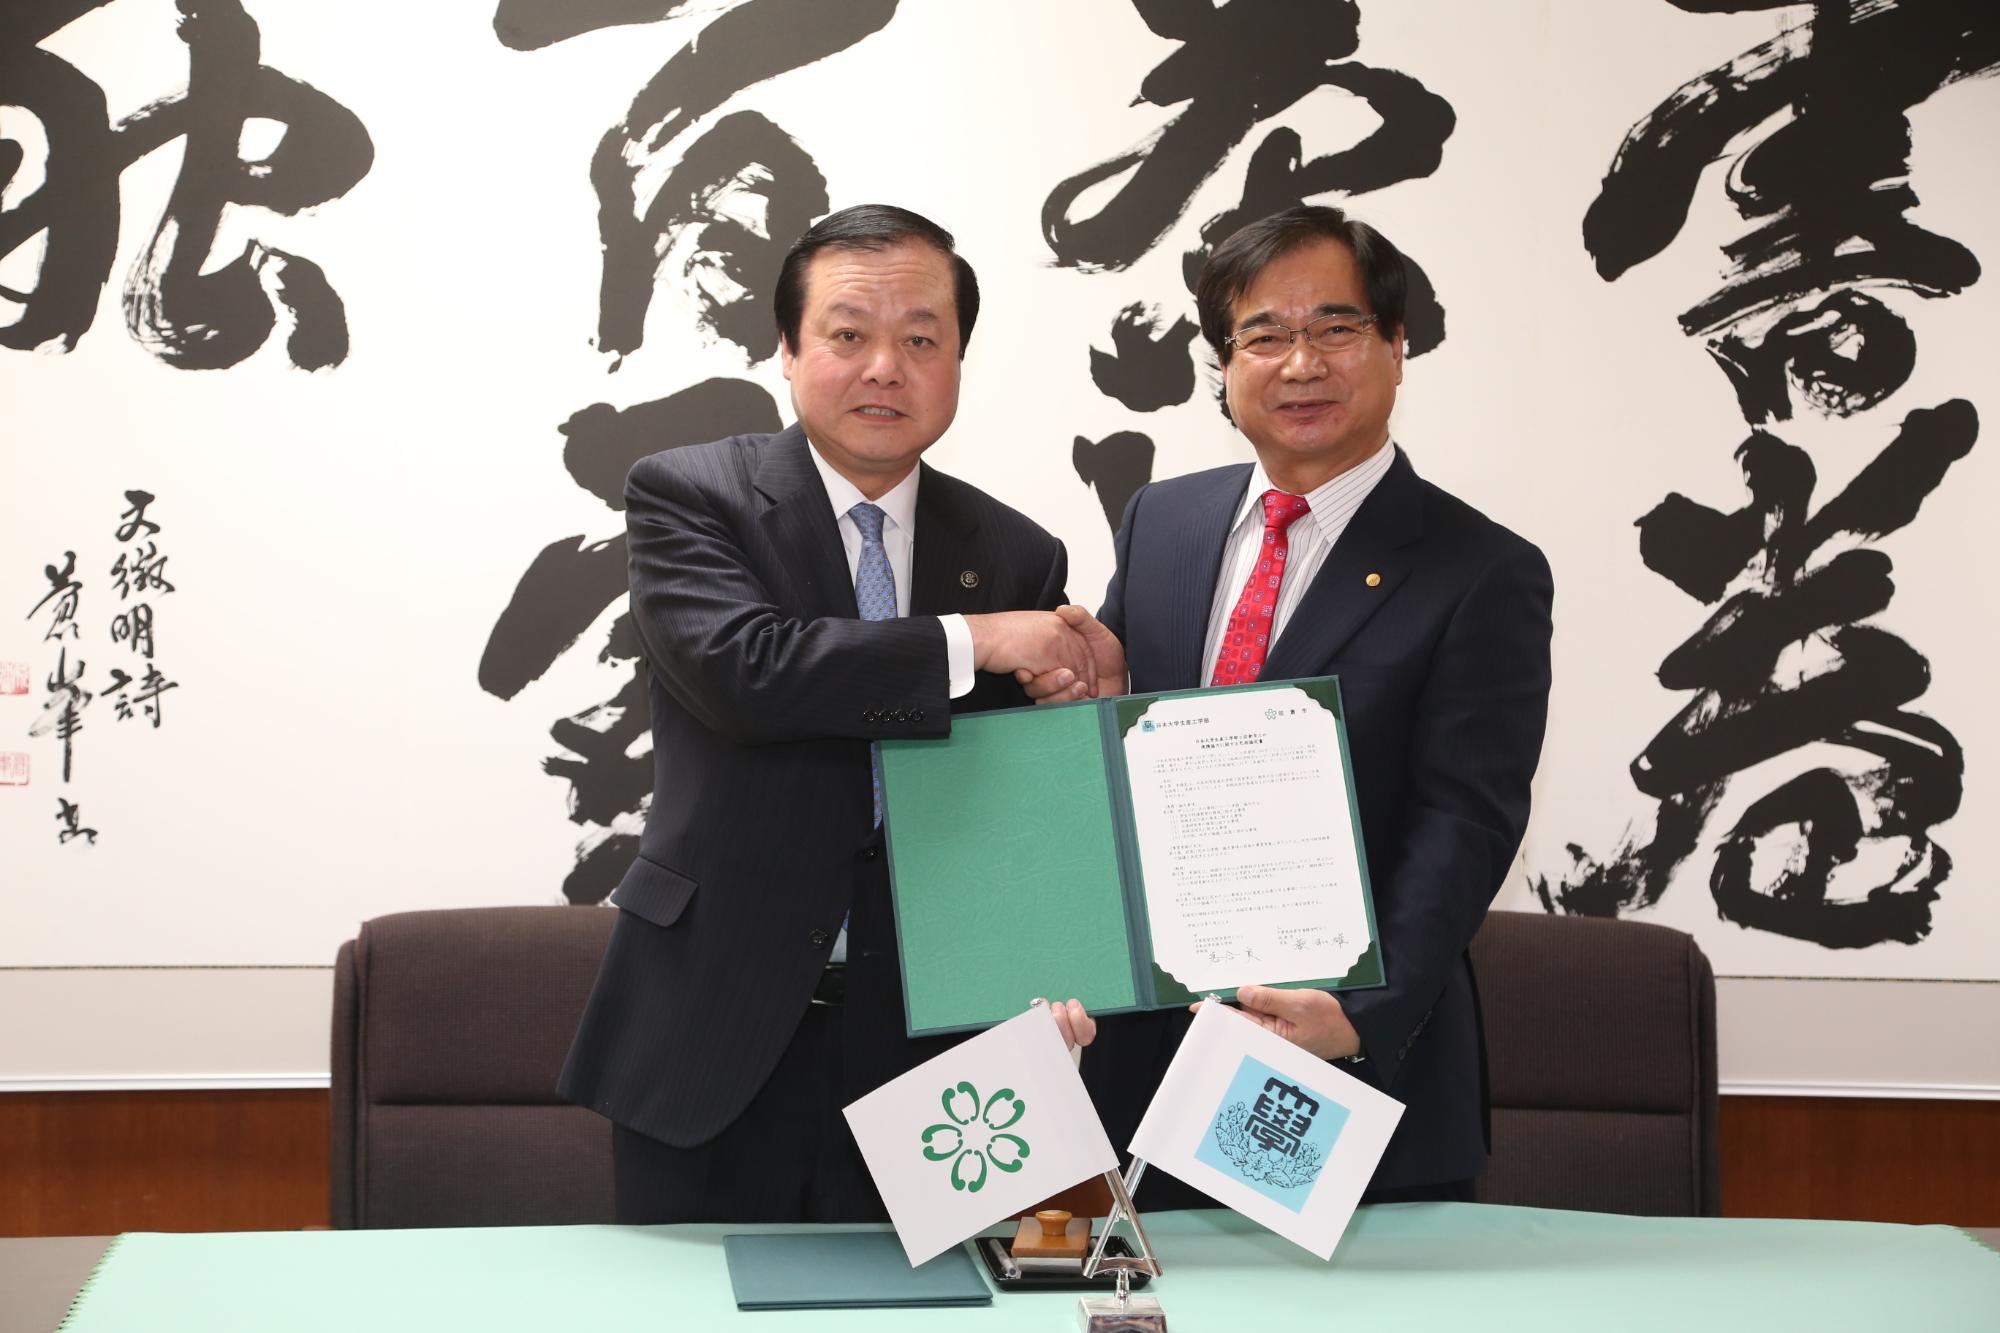 緑色のホルダーに協定書があり、そのホルダーを蕨市長と日本大学生産工学部 落合学部長と一緒に持ち片方の手で握手を交わしている写真